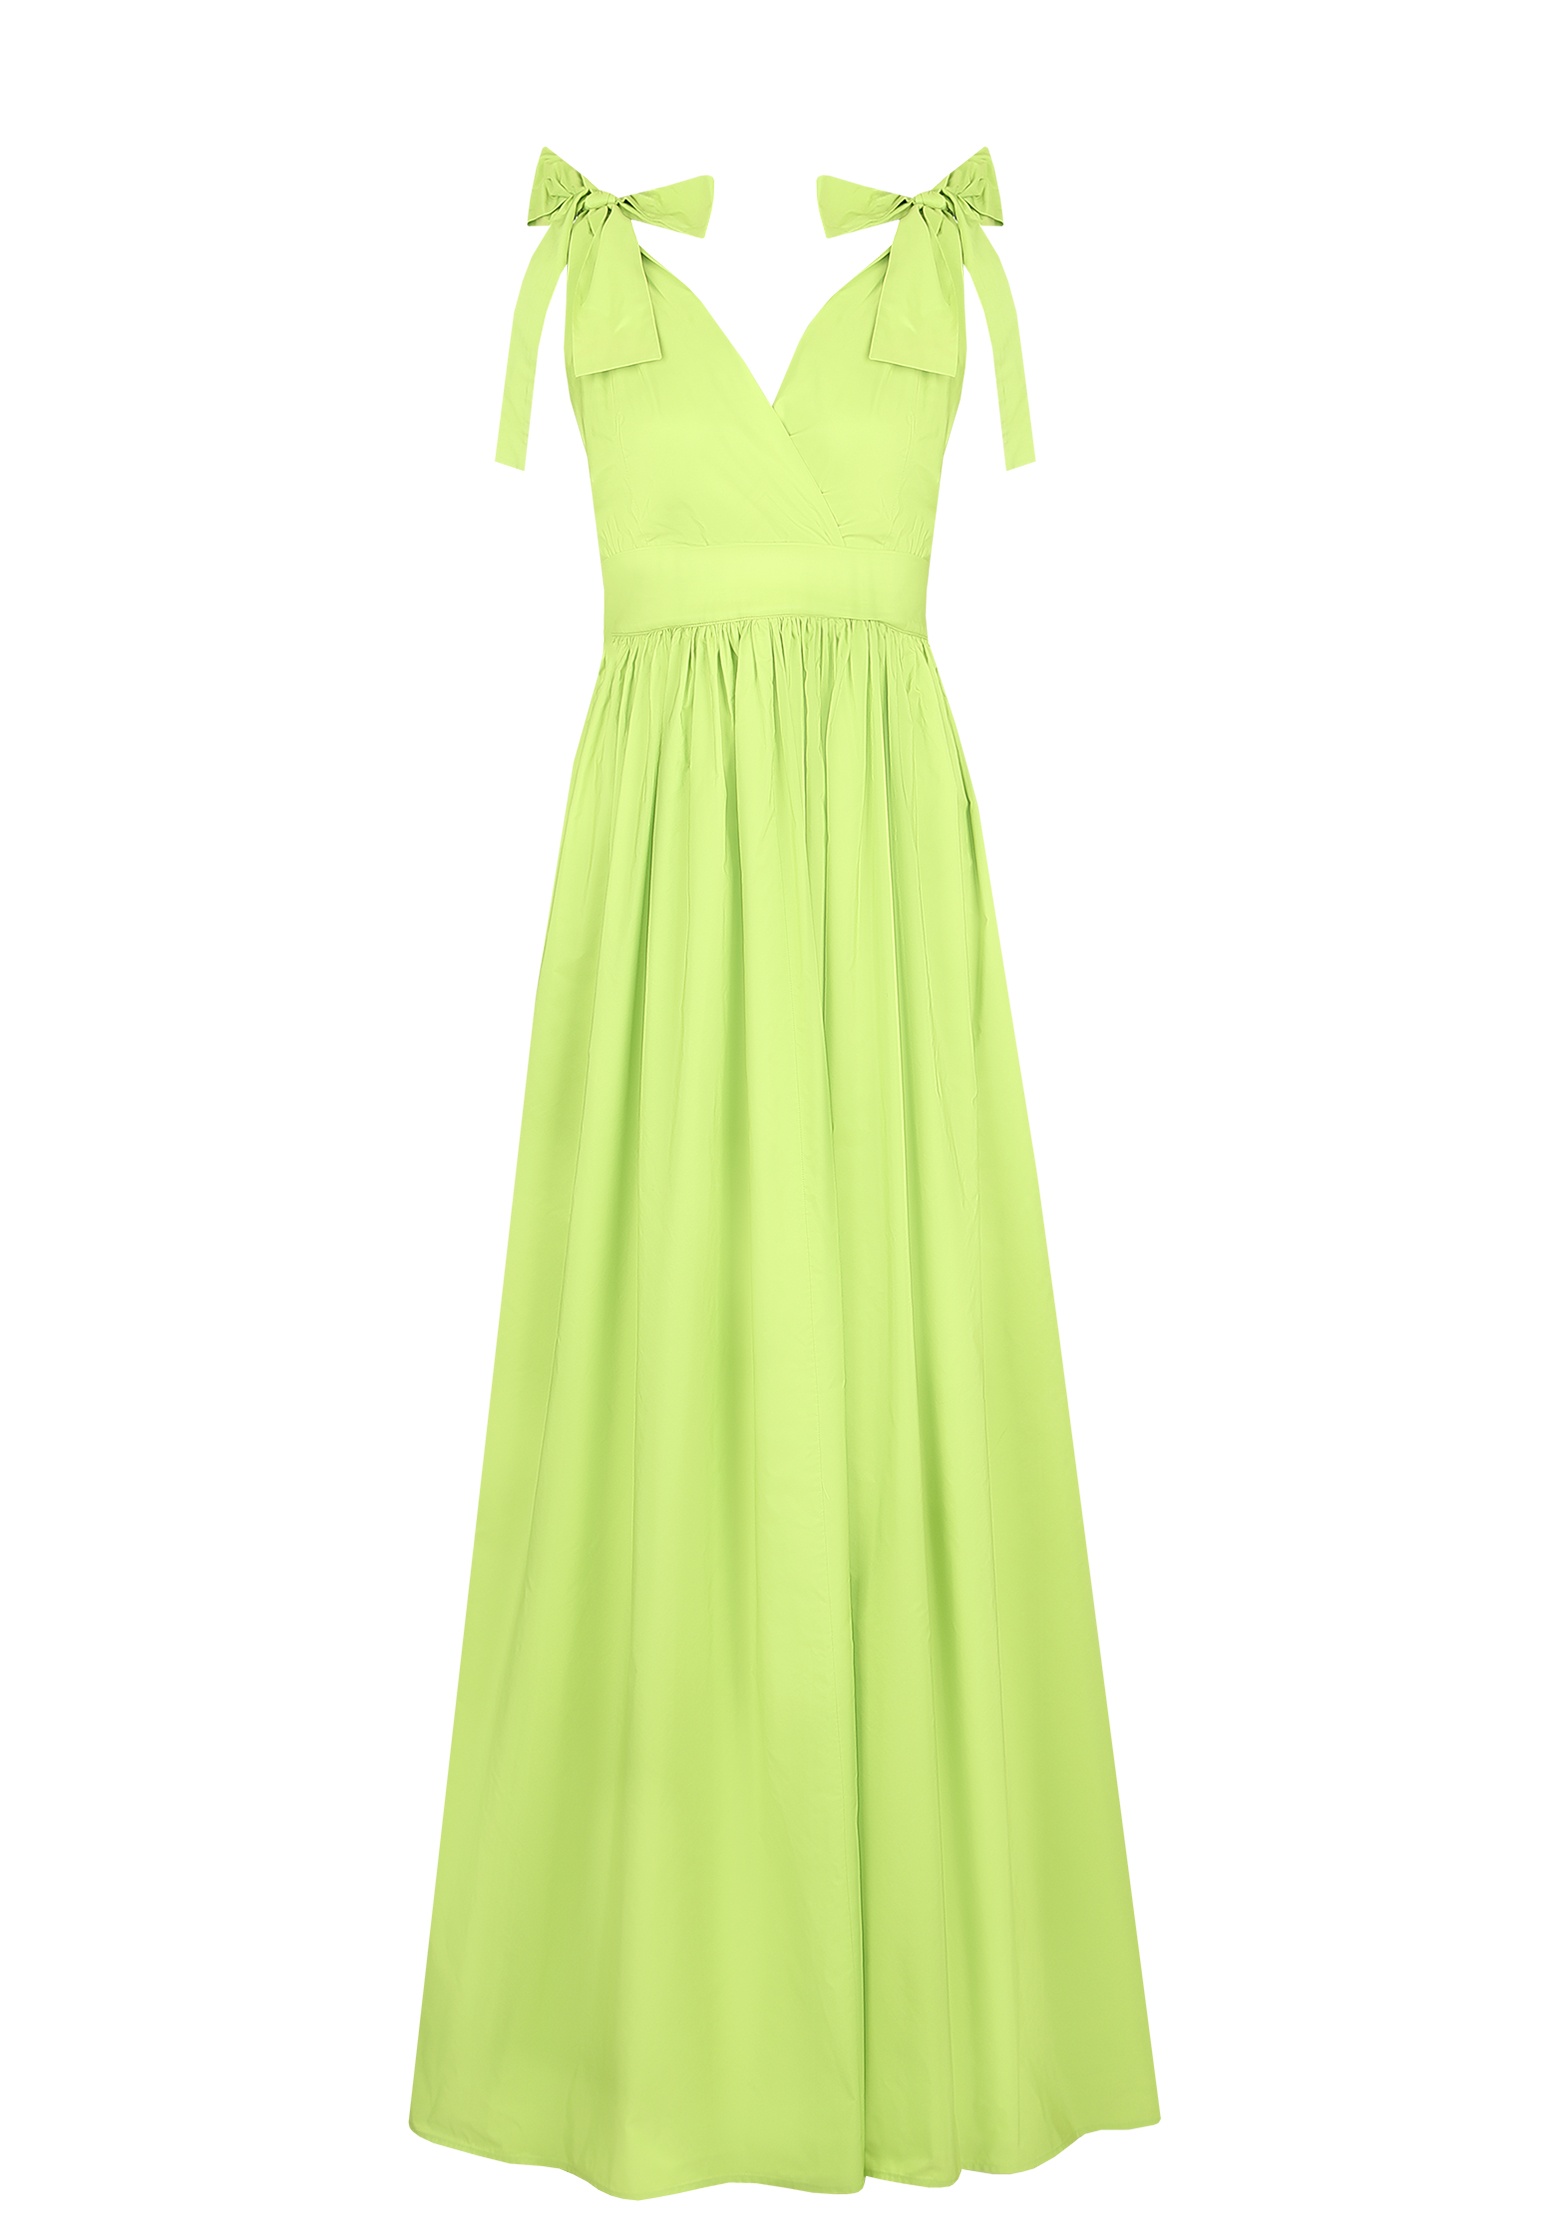 Платье женское Maison Co.go 142910 зеленое 38 IT